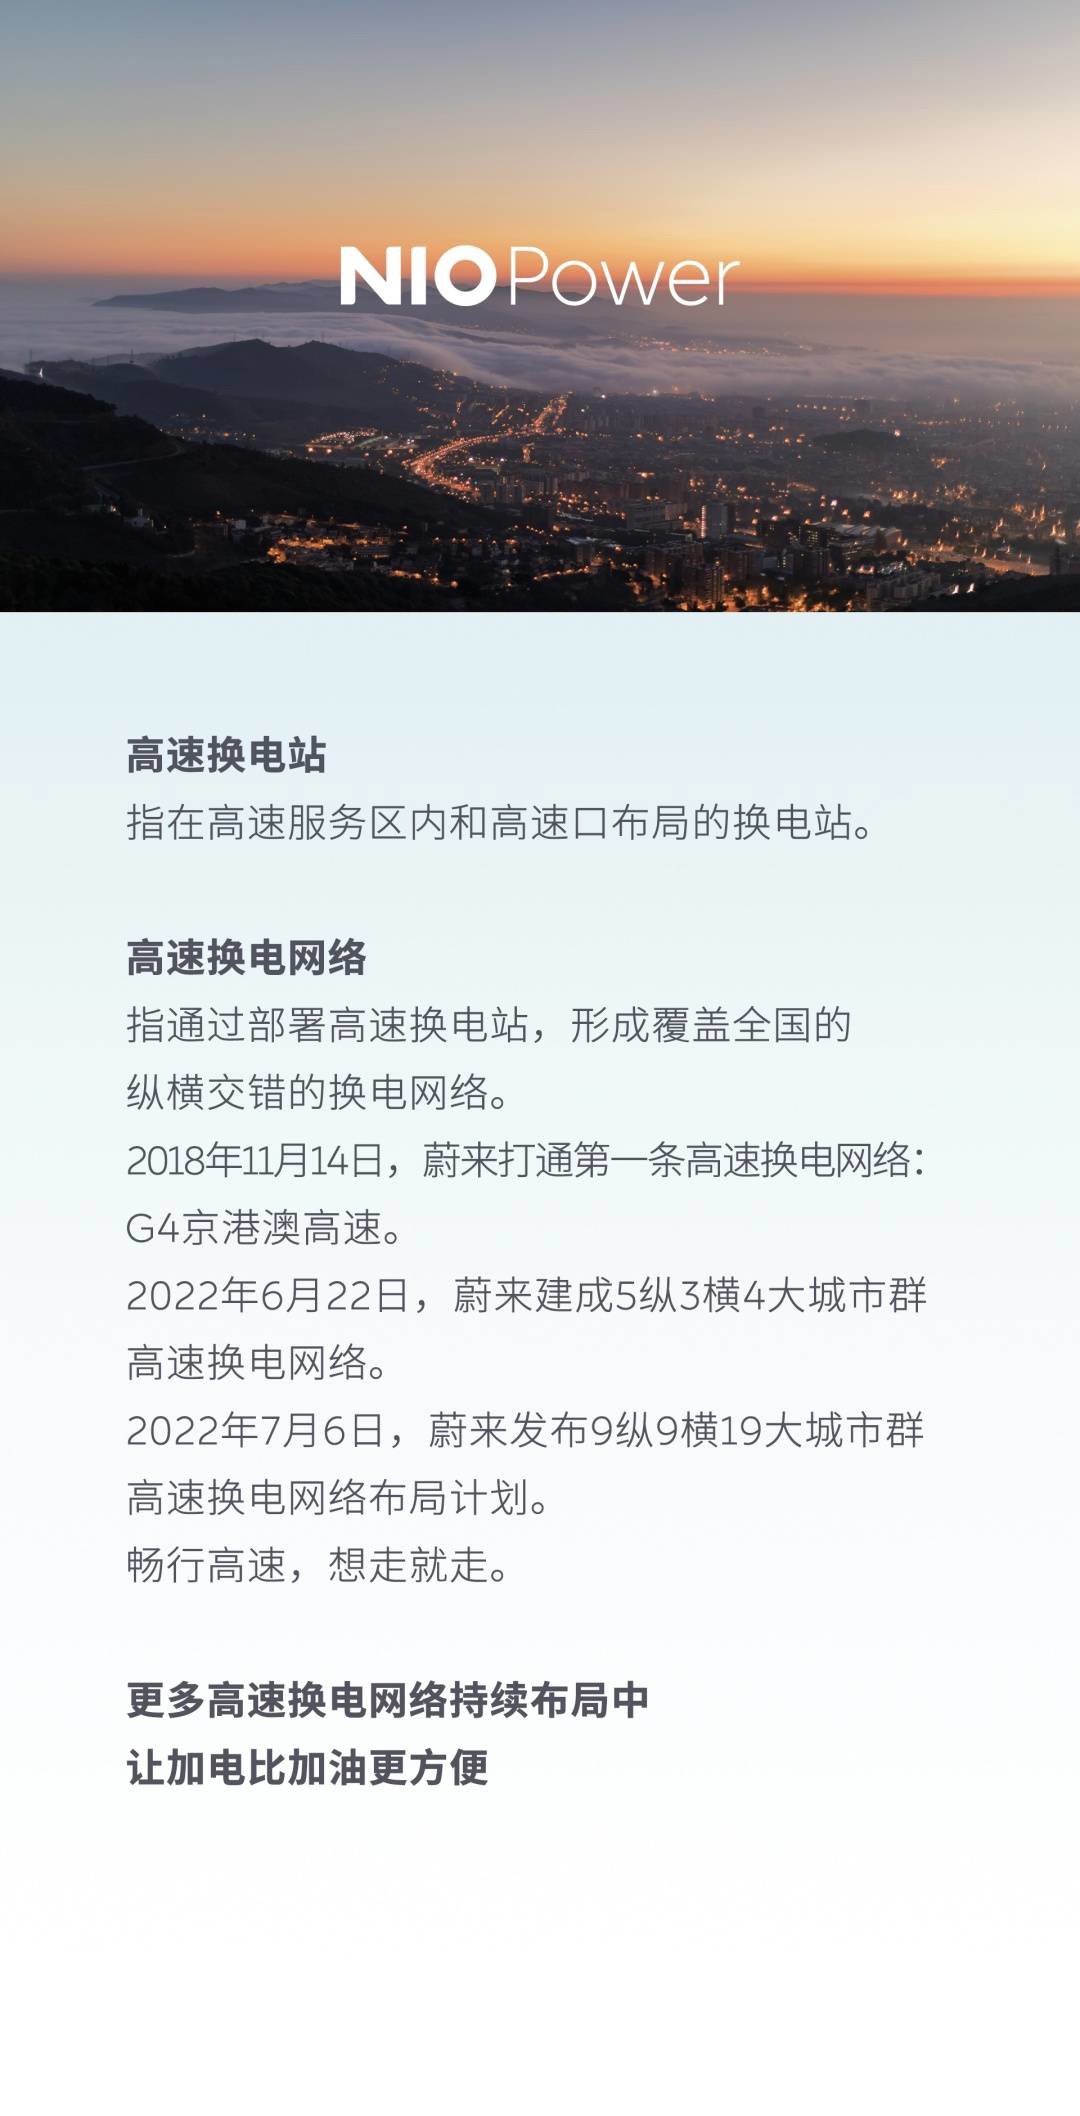 蔚来打通长江中游城市群高速换电网络，共布局 42 座换电站